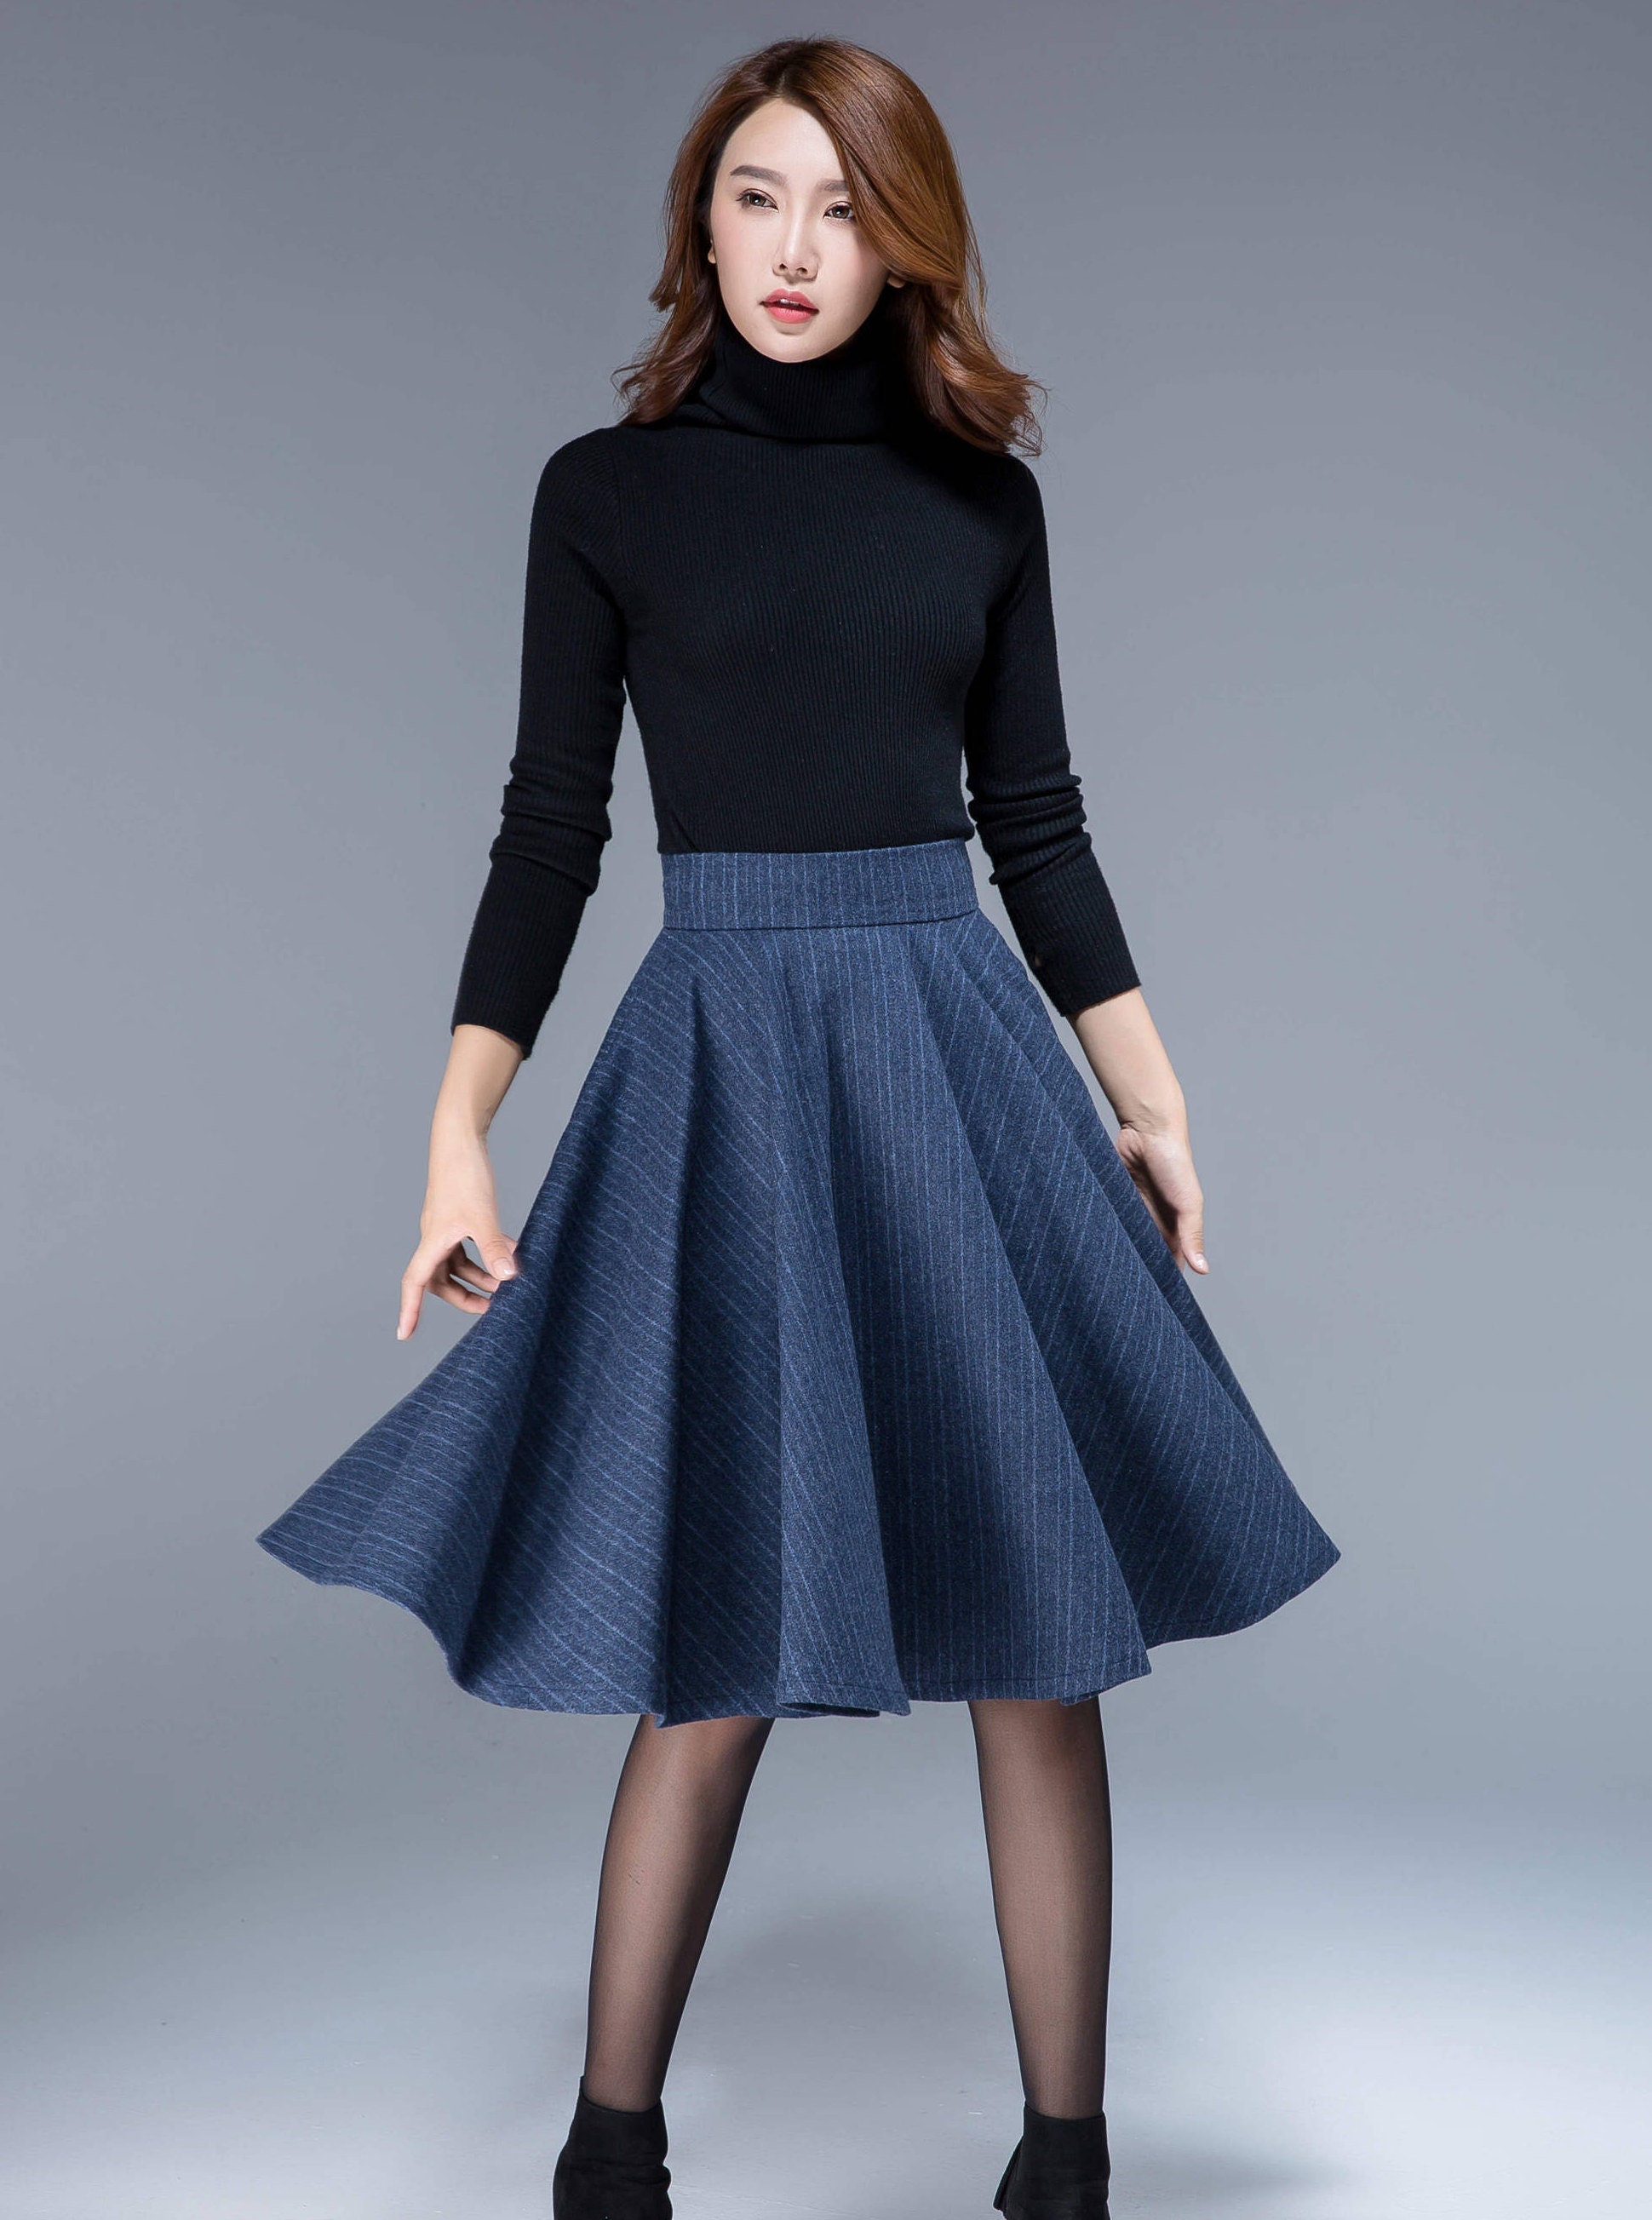 Wool skate skirt skate skirt mini skirt blue stripe skirt | Etsy